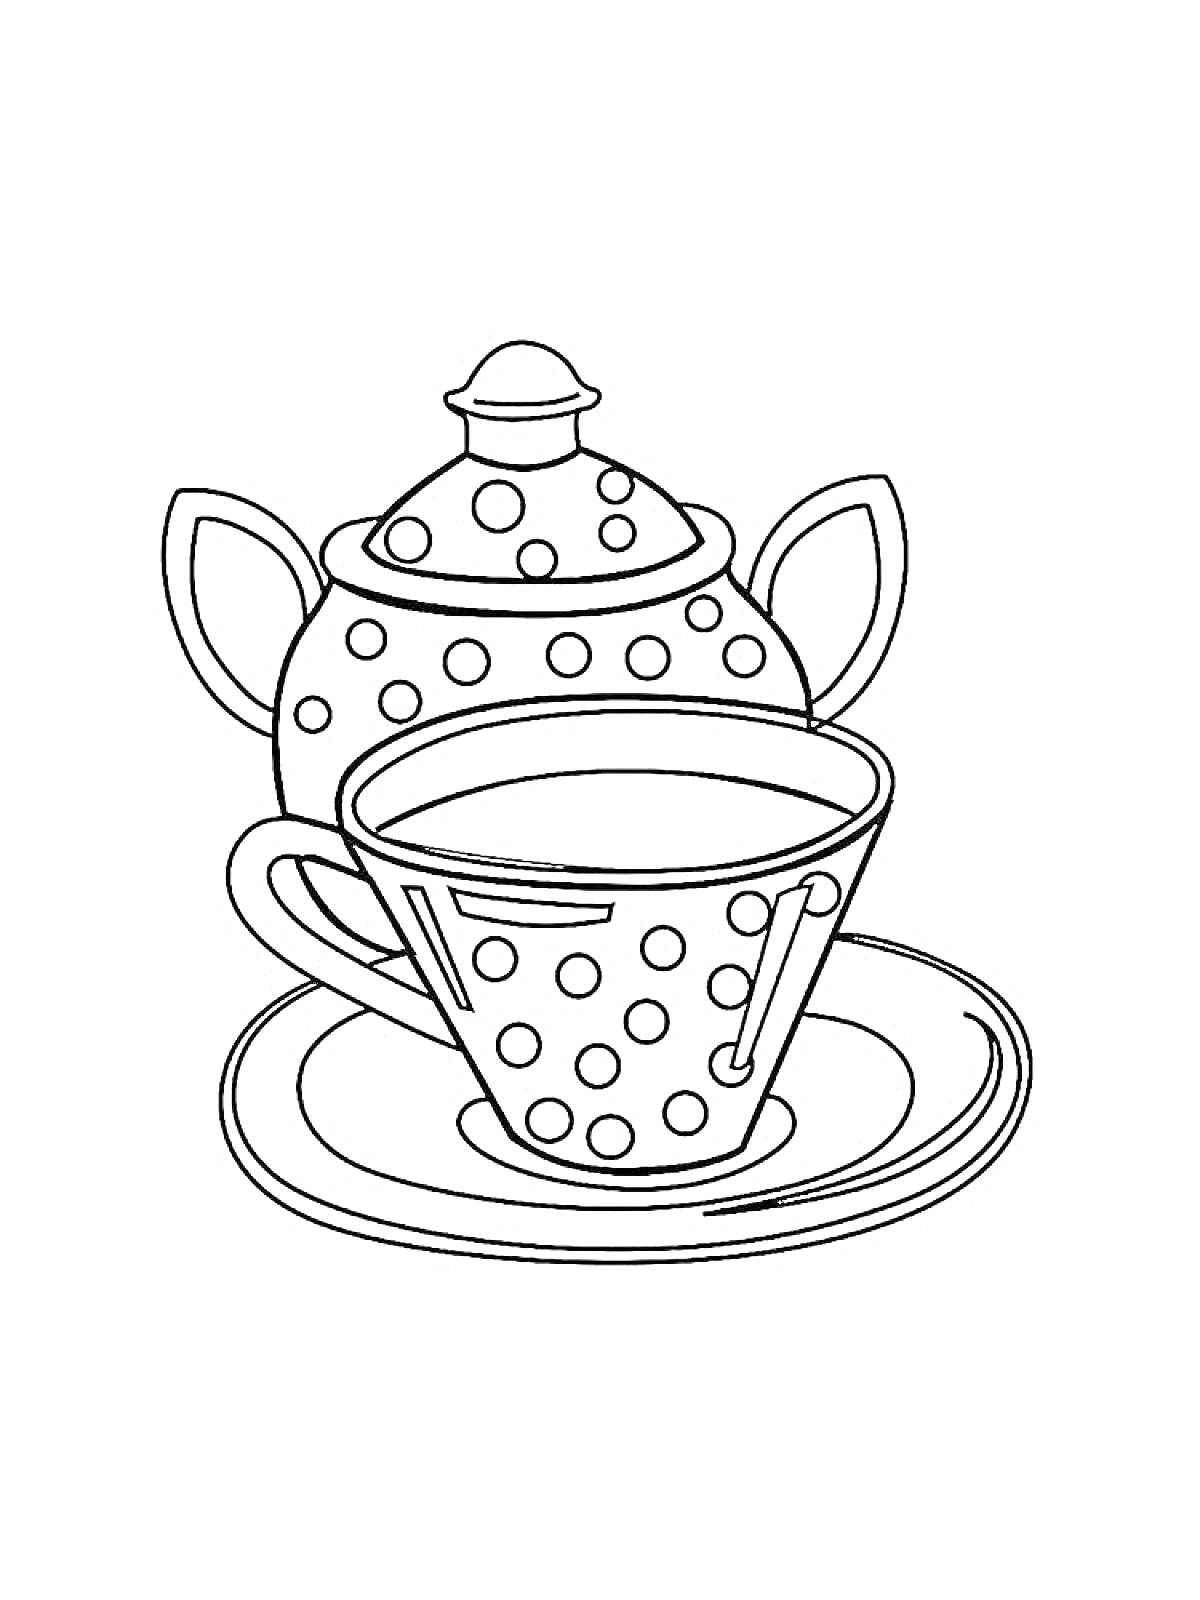 Раскраска Чайник с крышкой и чашка с блюдцем